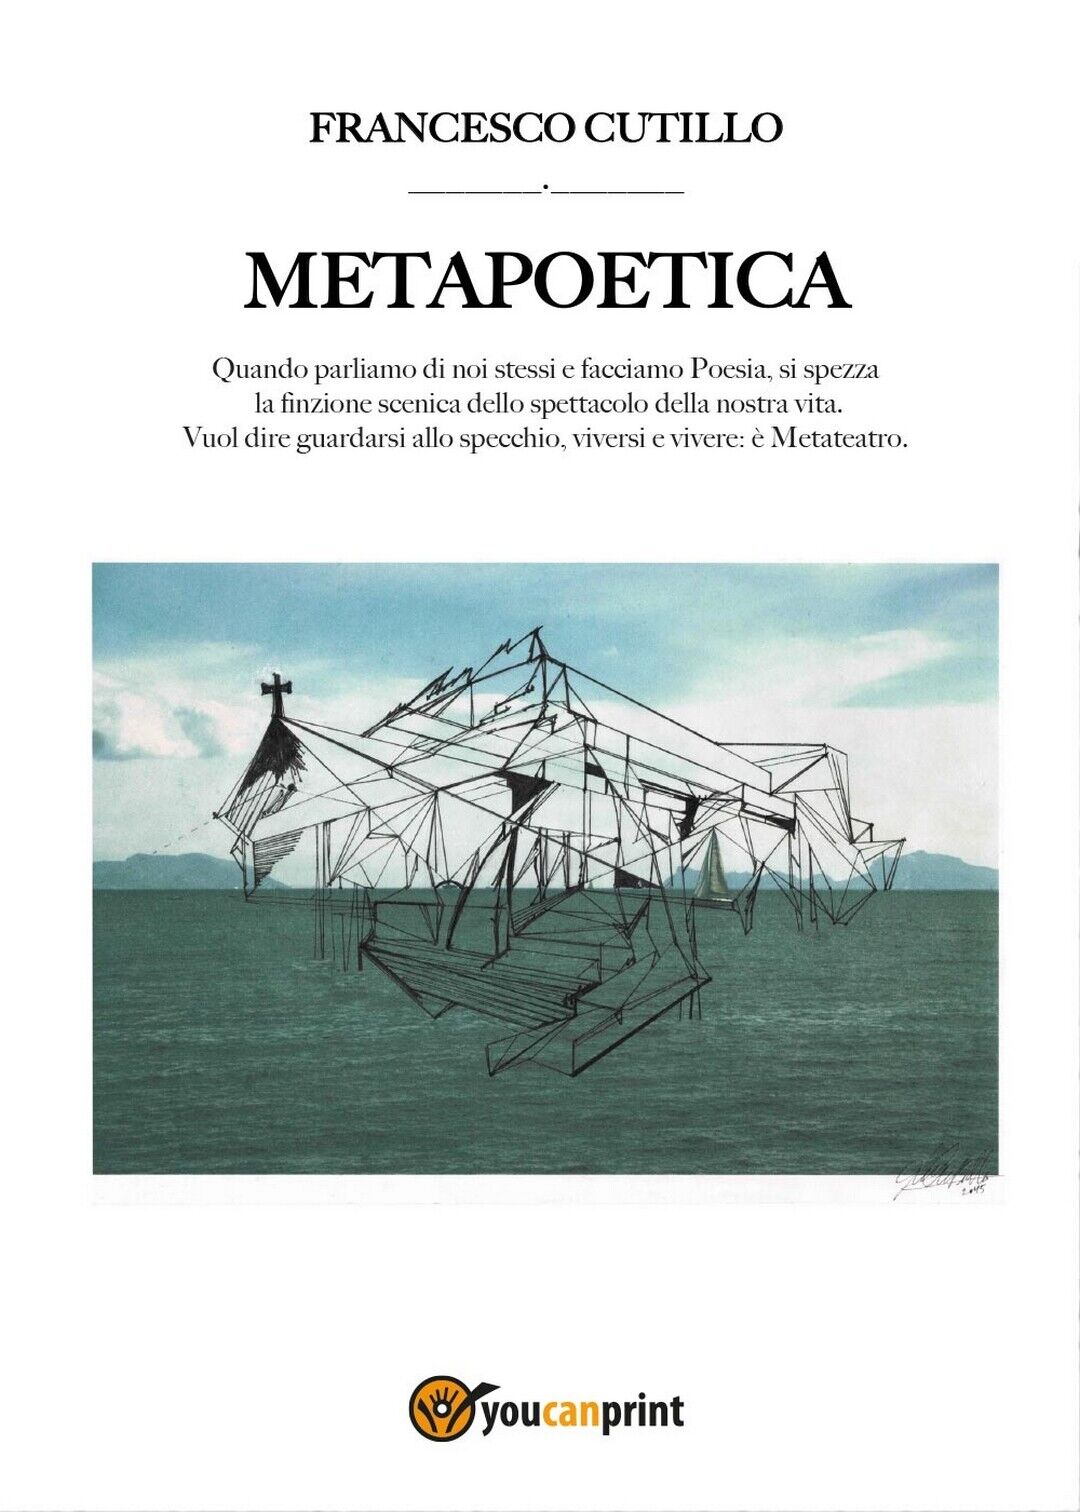 Metapoetica  di Francesco Cutillo,  2016,  Youcanprint